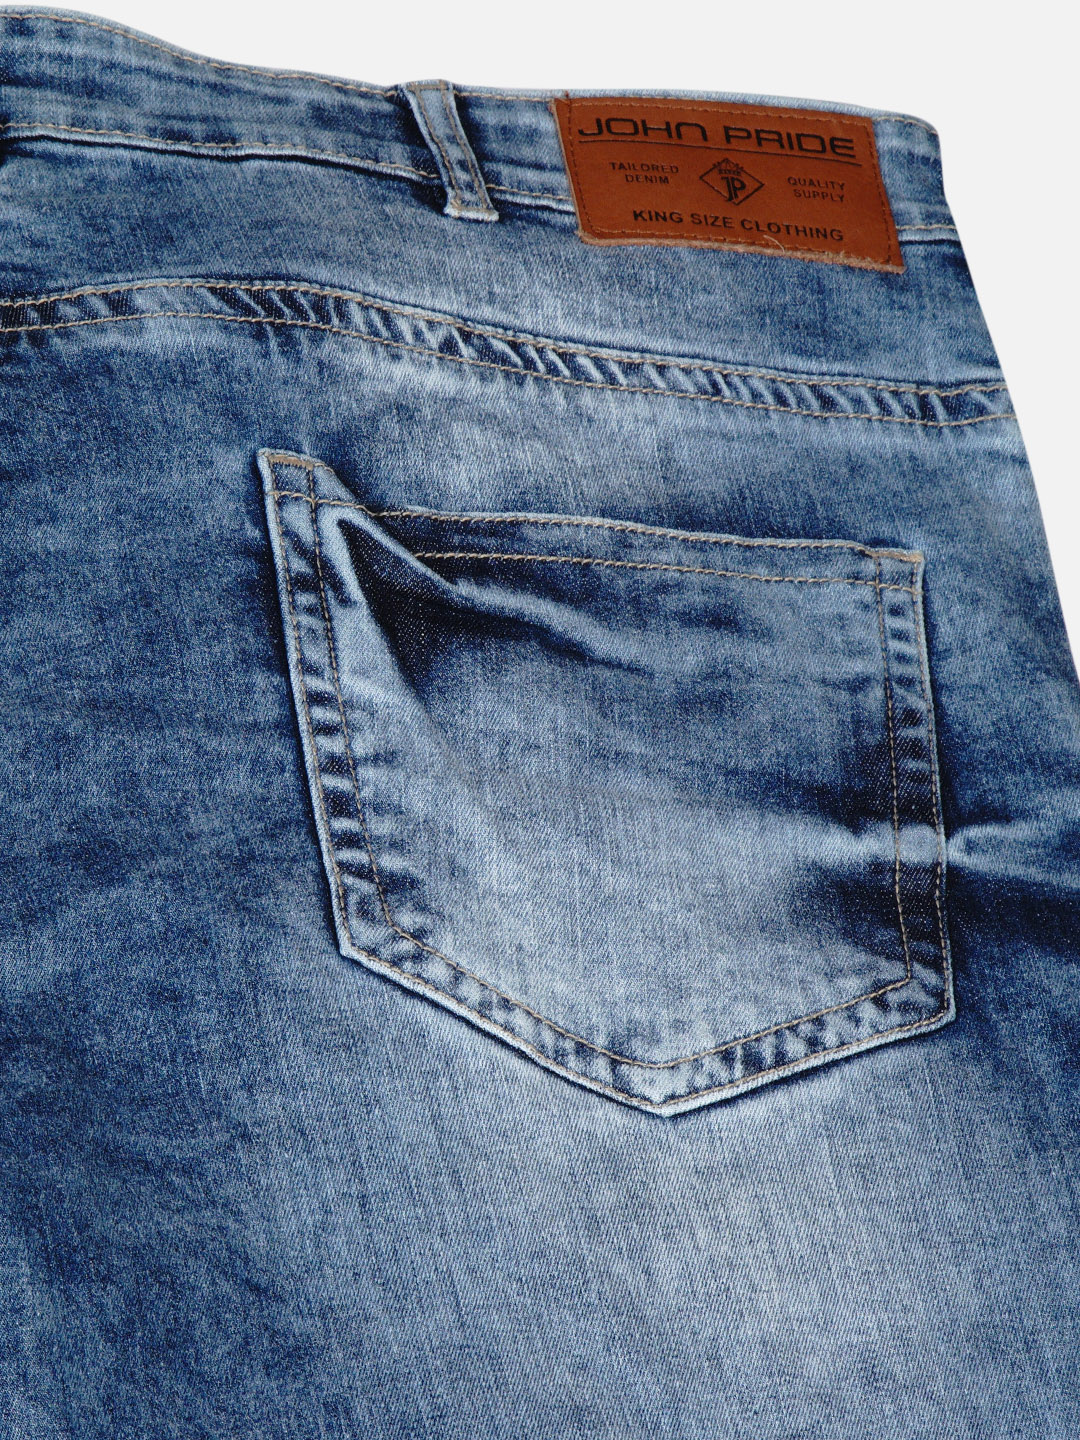 bottomwear/jeans/JPJ12181/jpj12181-2.jpg